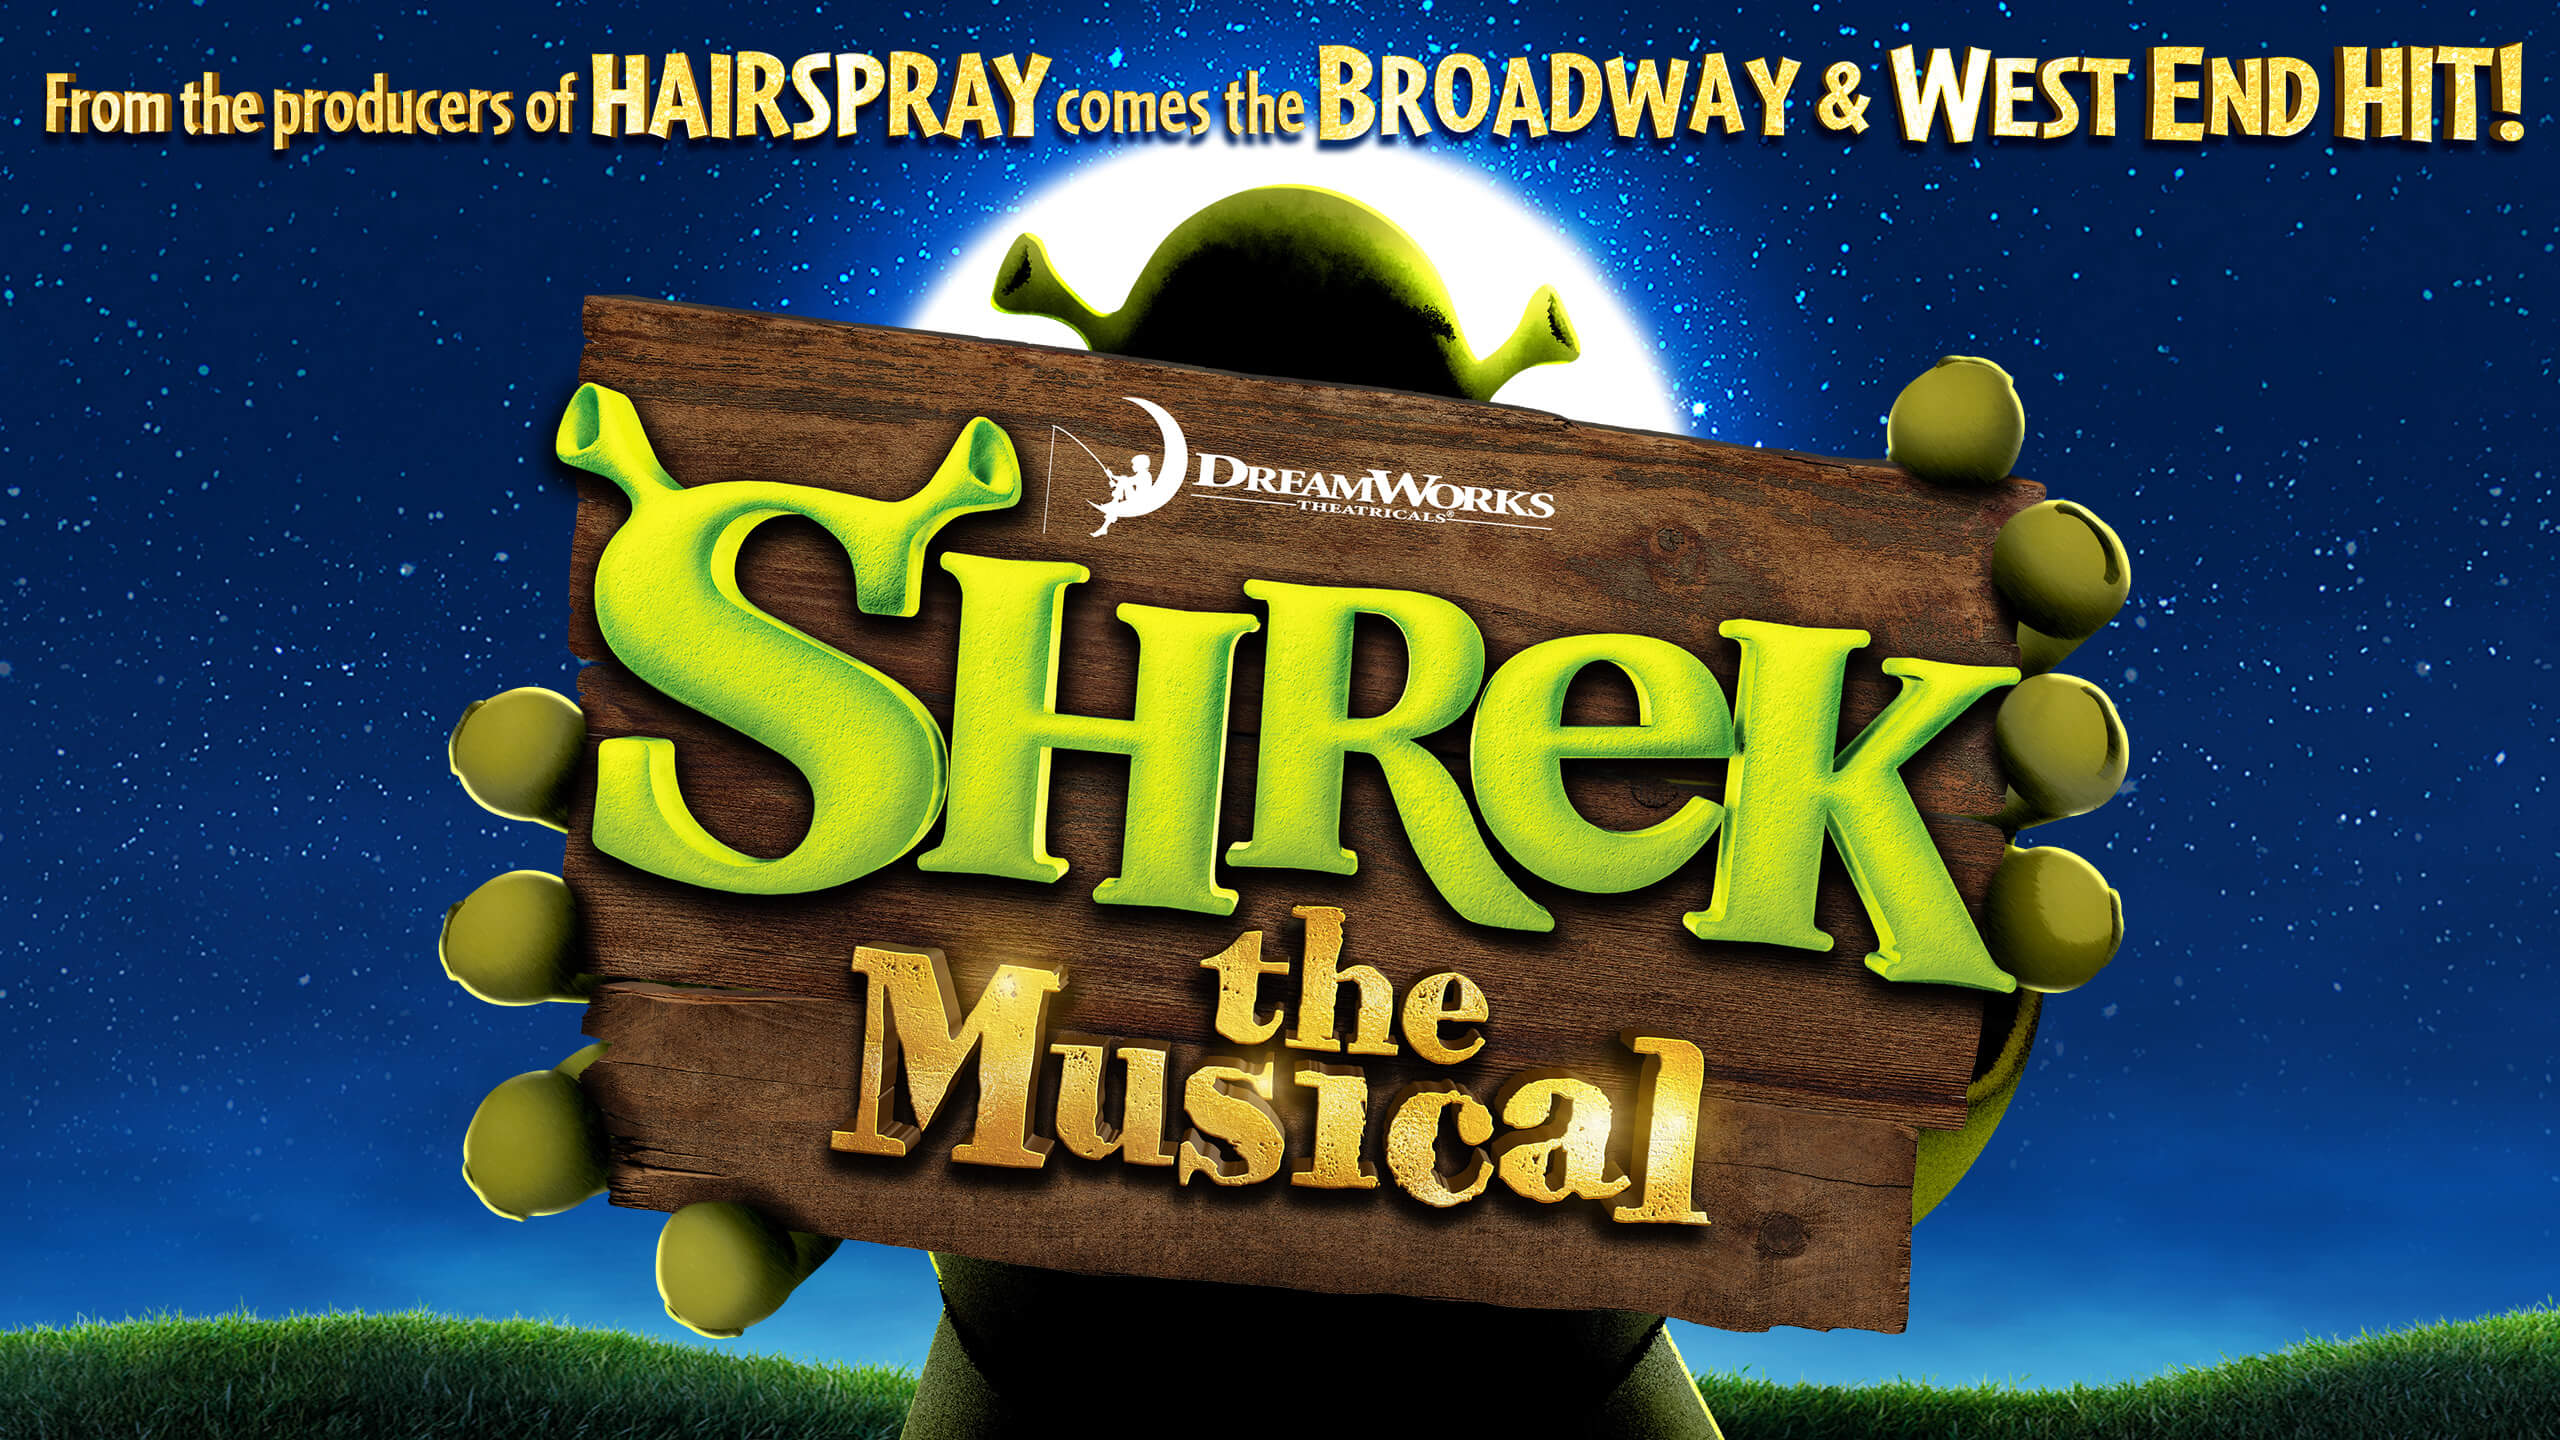 Advertising sign for Shrek the Musical